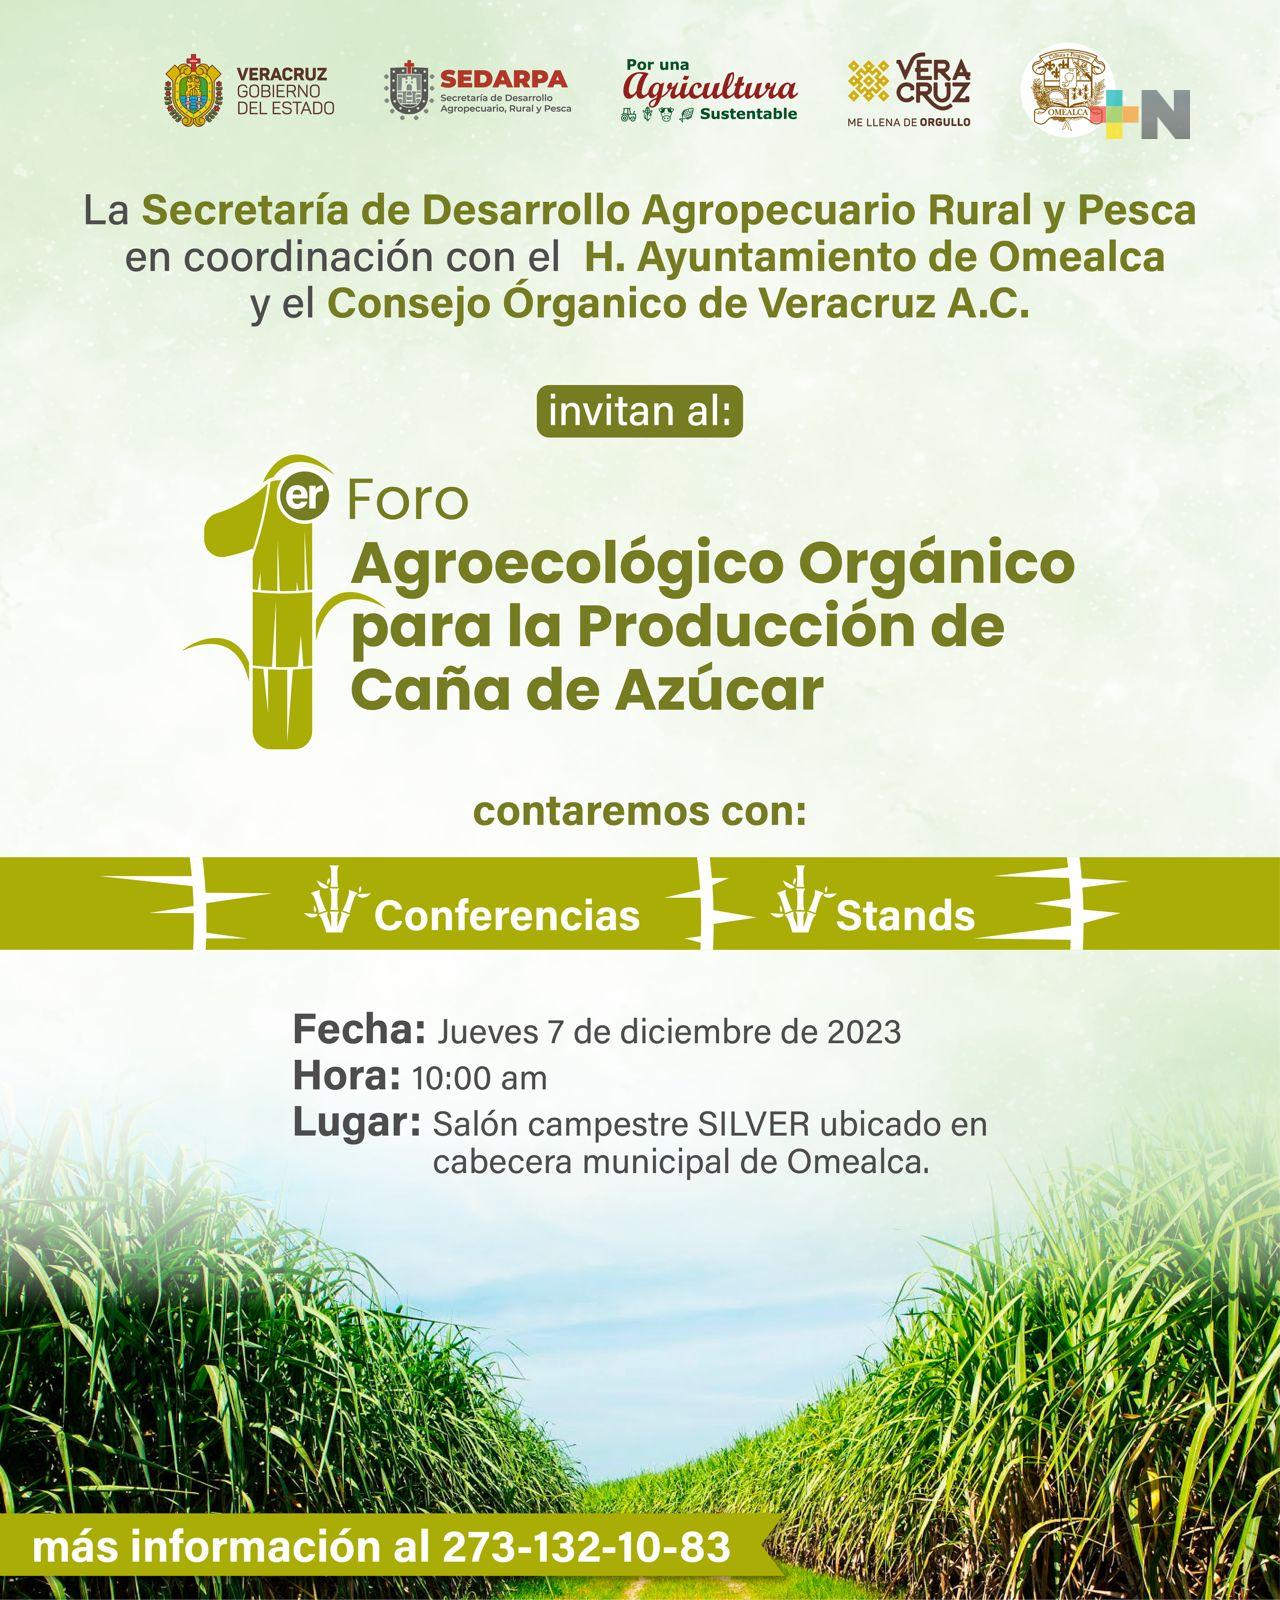 Invitan al primer Foro Agroecológico sobre el cultivo de la caña de azúcar en Omealca